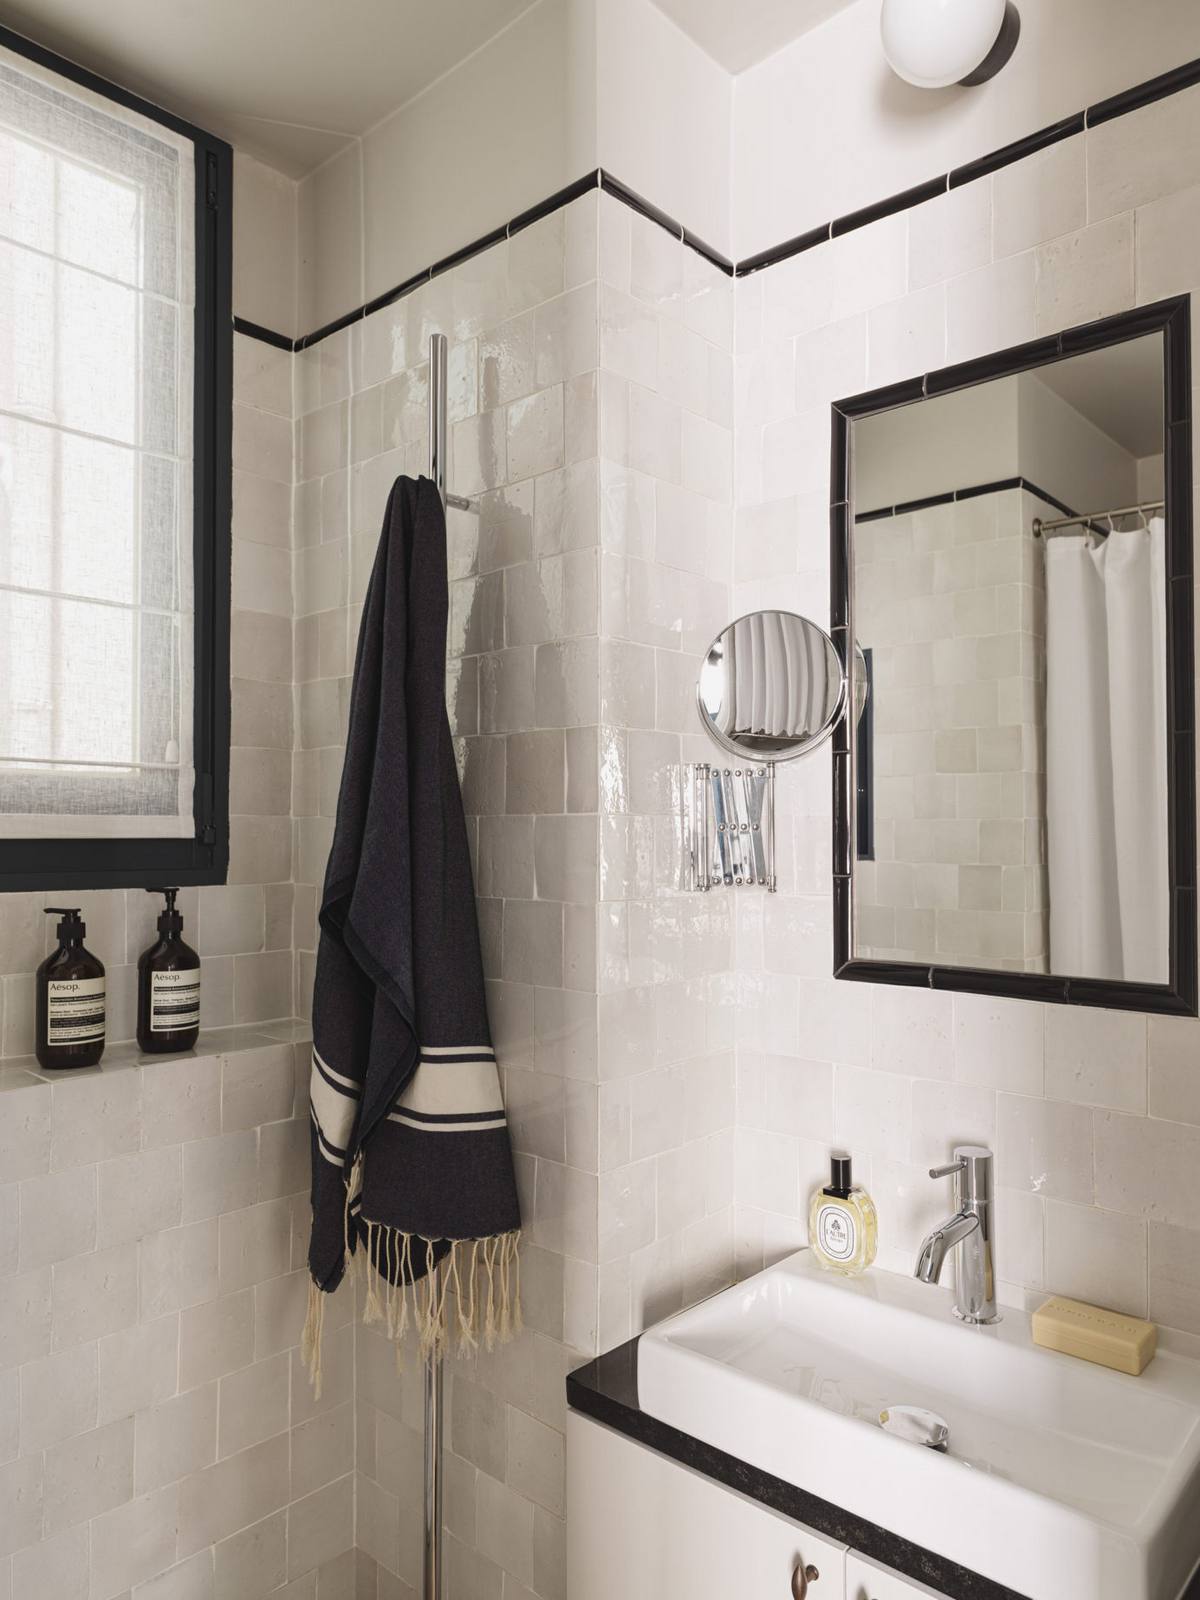 Phòng tắm nhỏ sử dụng gam màu trắng với các chi tiết màu đen làm điểm nhấn cho vẻ đẹp cổ điển. Cửa sổ phòng tắm tích hợp lớp rèm che mờ để tạo sự riêng tư. Gạch ốp tường sáng bóng cùng gương soi cho không gian tươi sáng và rộng rãi hơn so với diện tích thật.